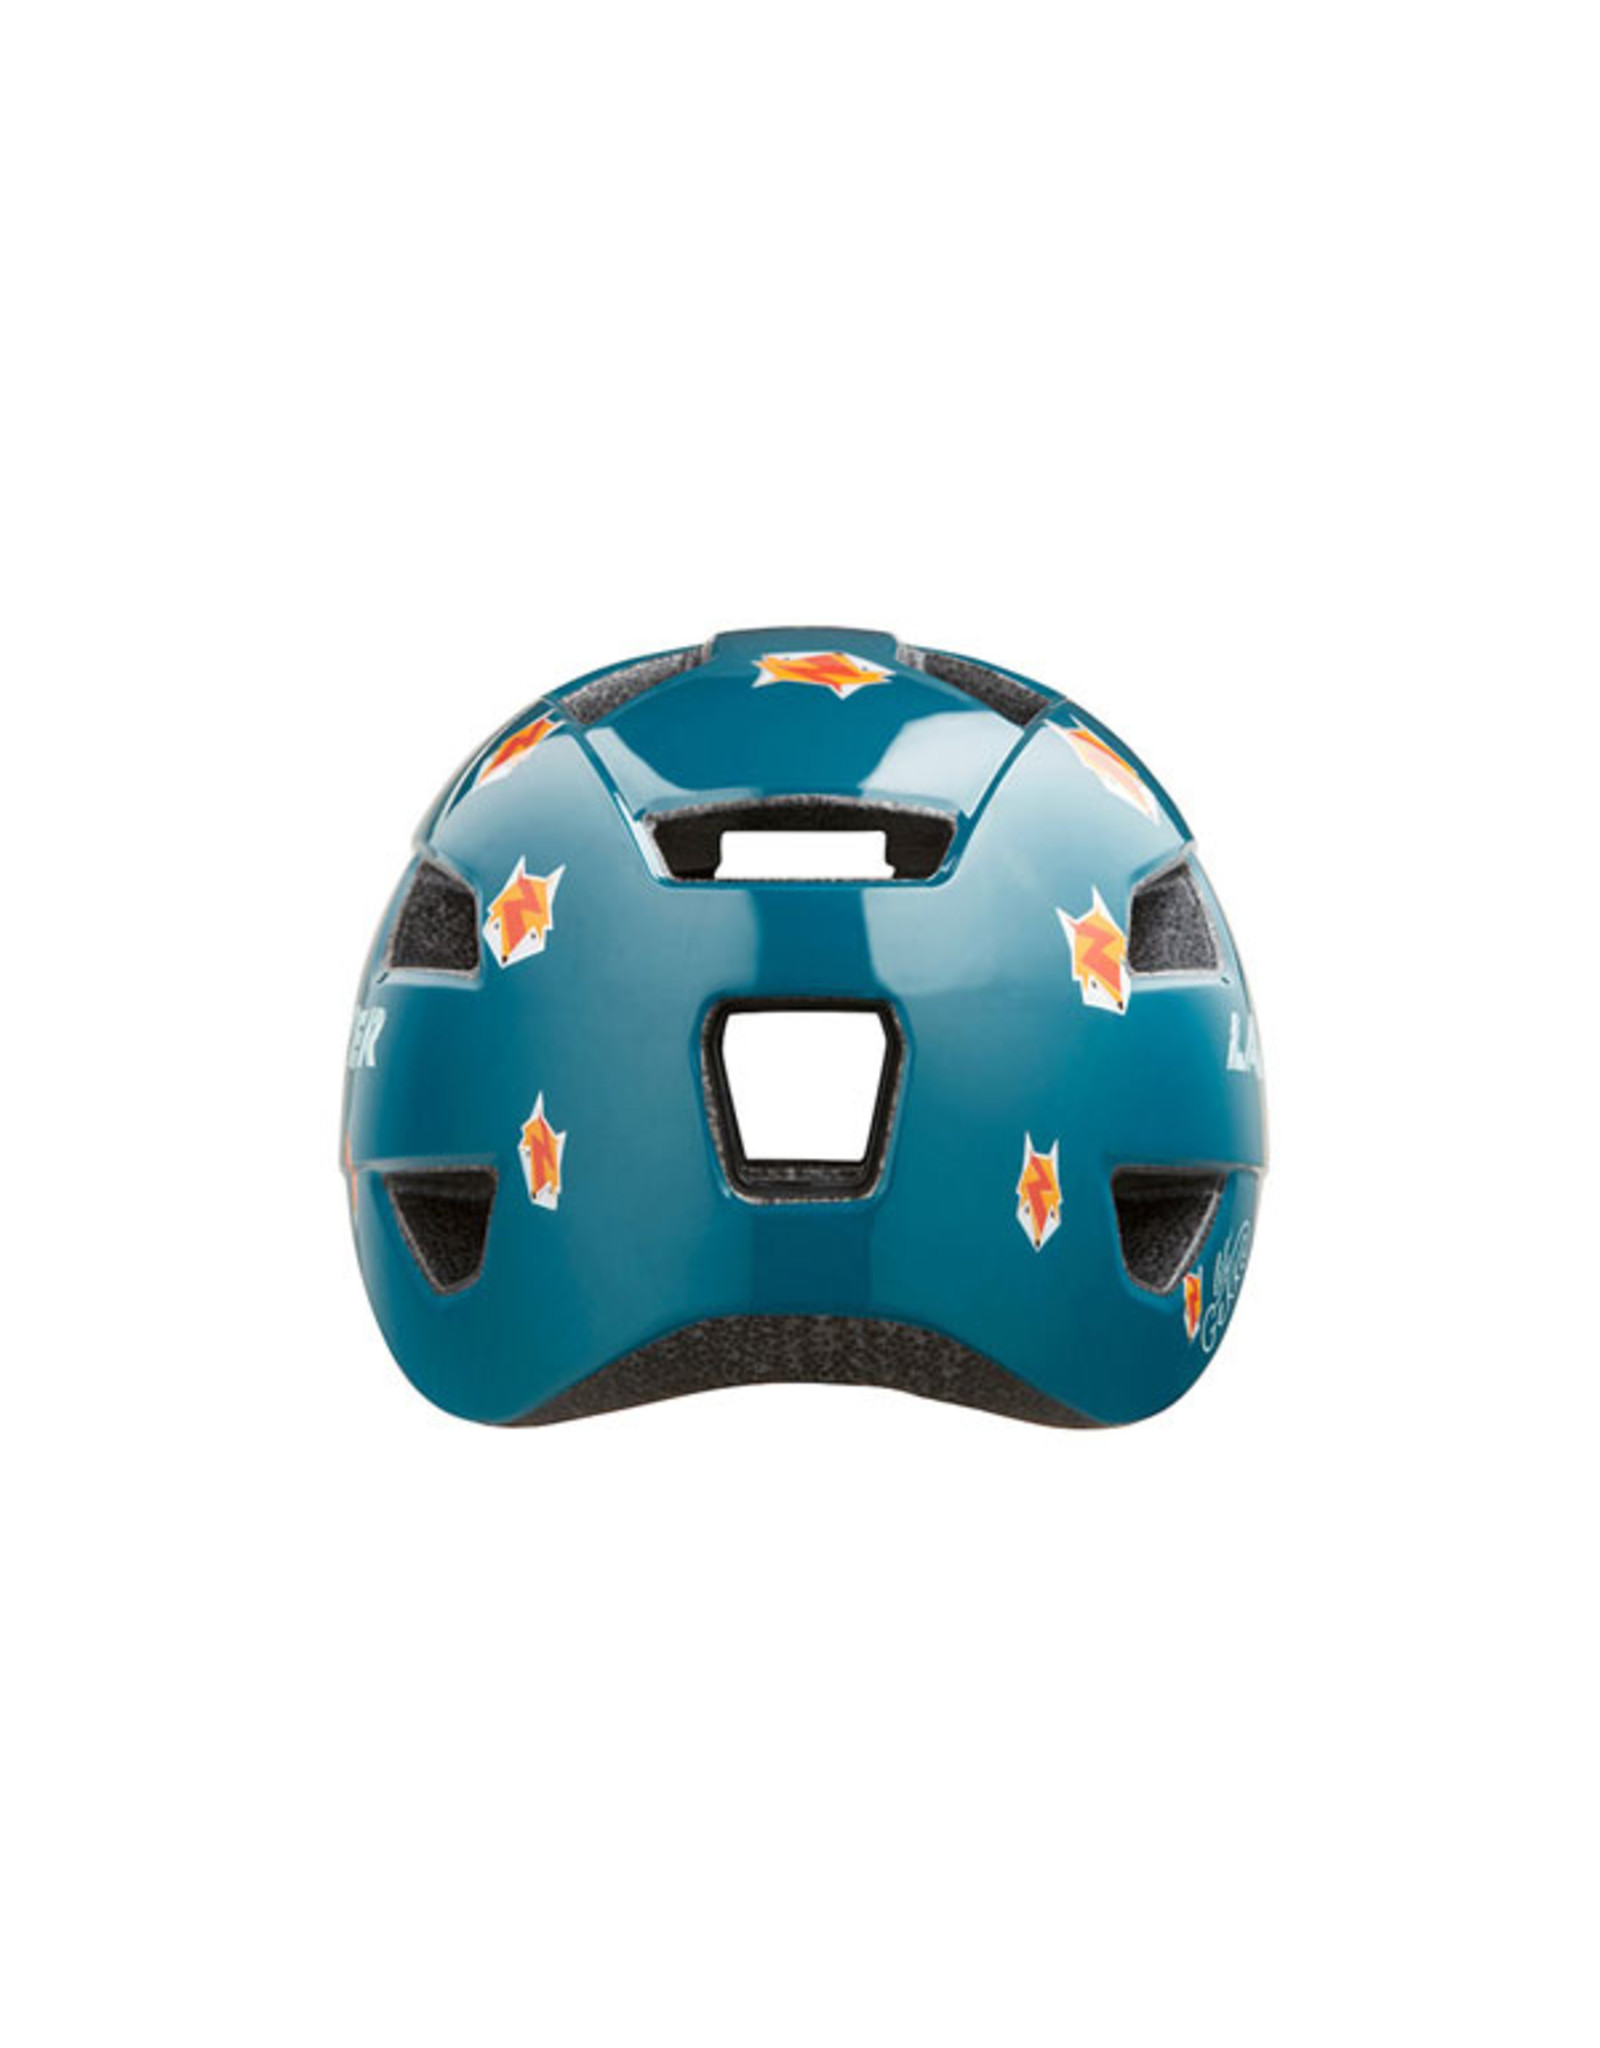 Helmet Blue w/ Foxes Unisize Toddler (46-50 cm) Lil Gekko Lazer